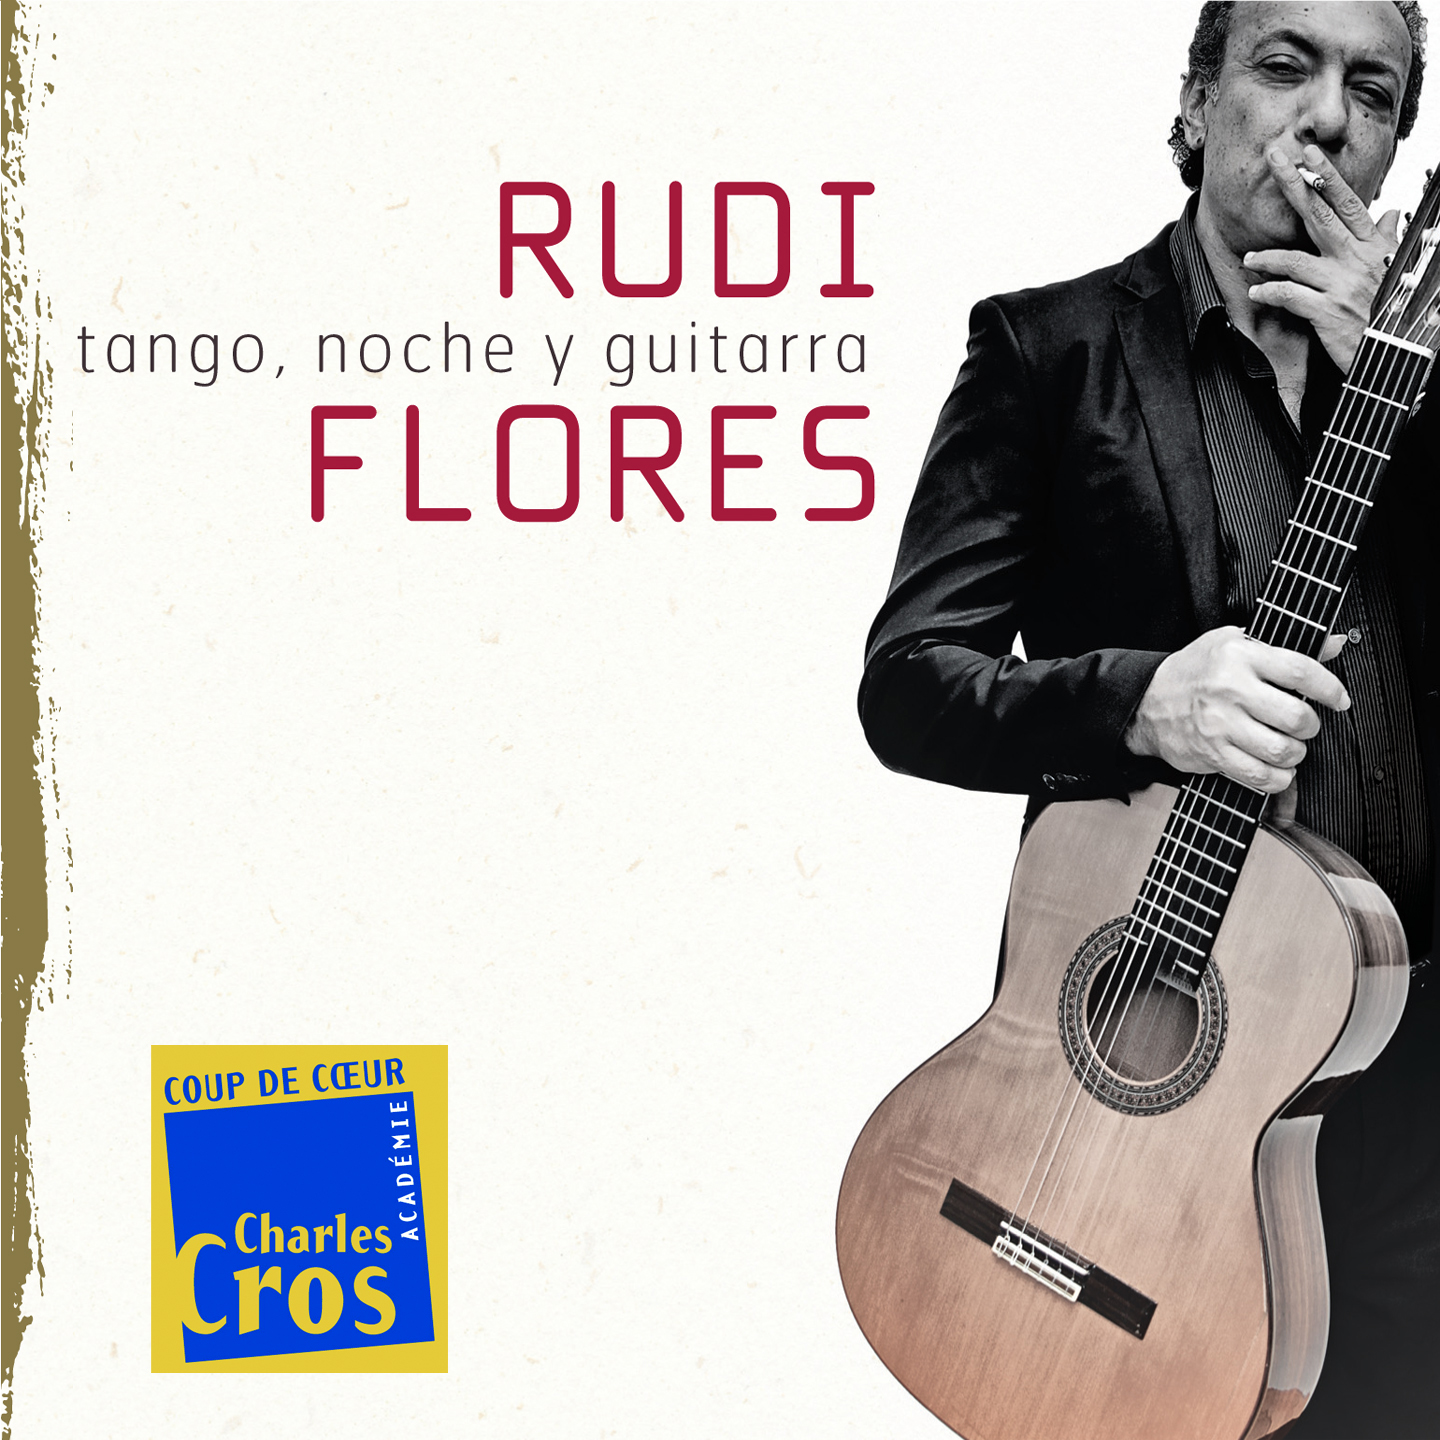 Rudi Flores